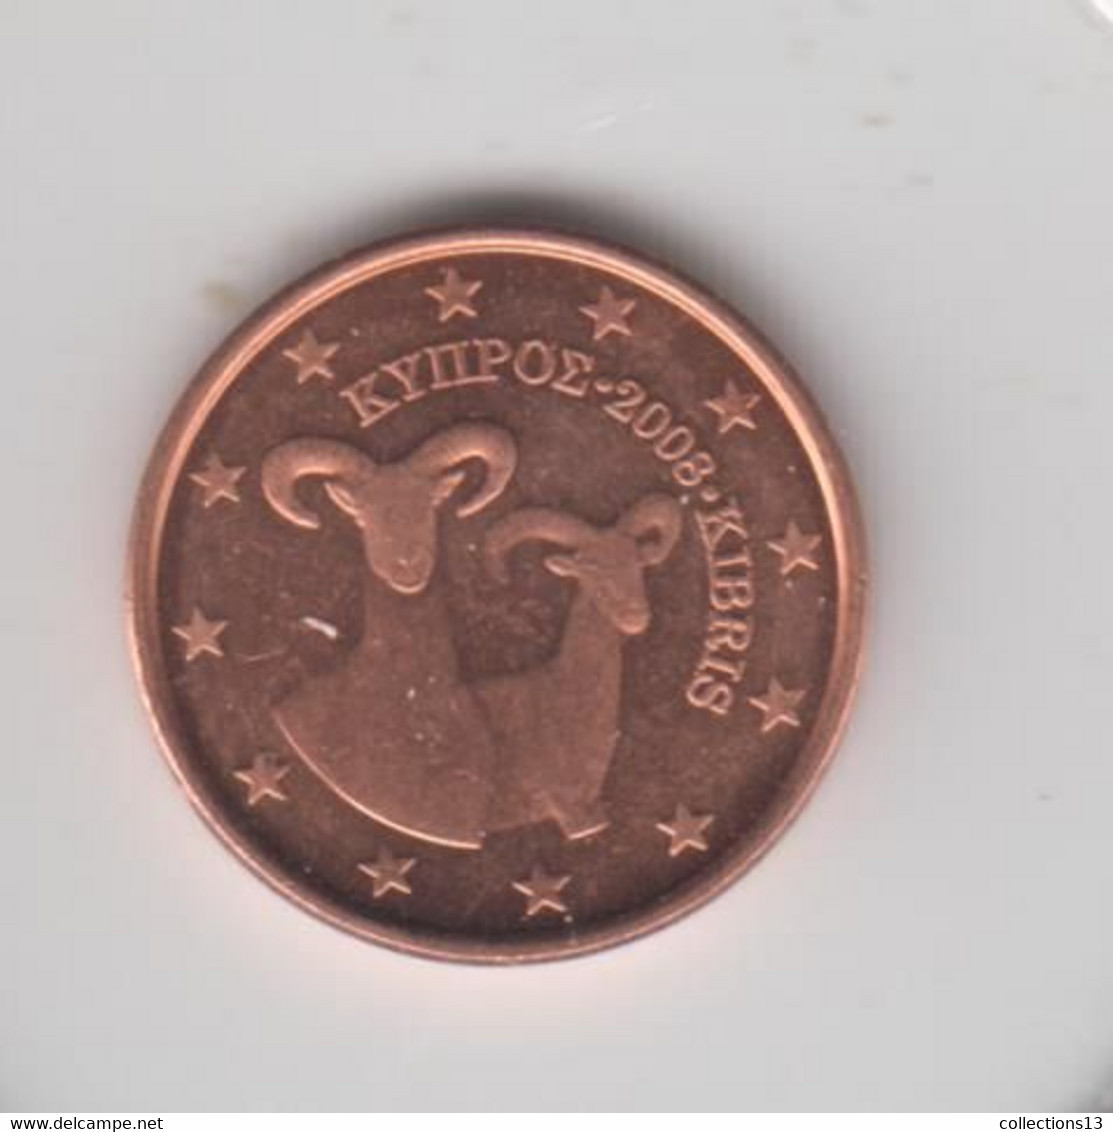 CHYPRE - 1 Cent + 2 Cents + 5 Cents 2008 - Chypre